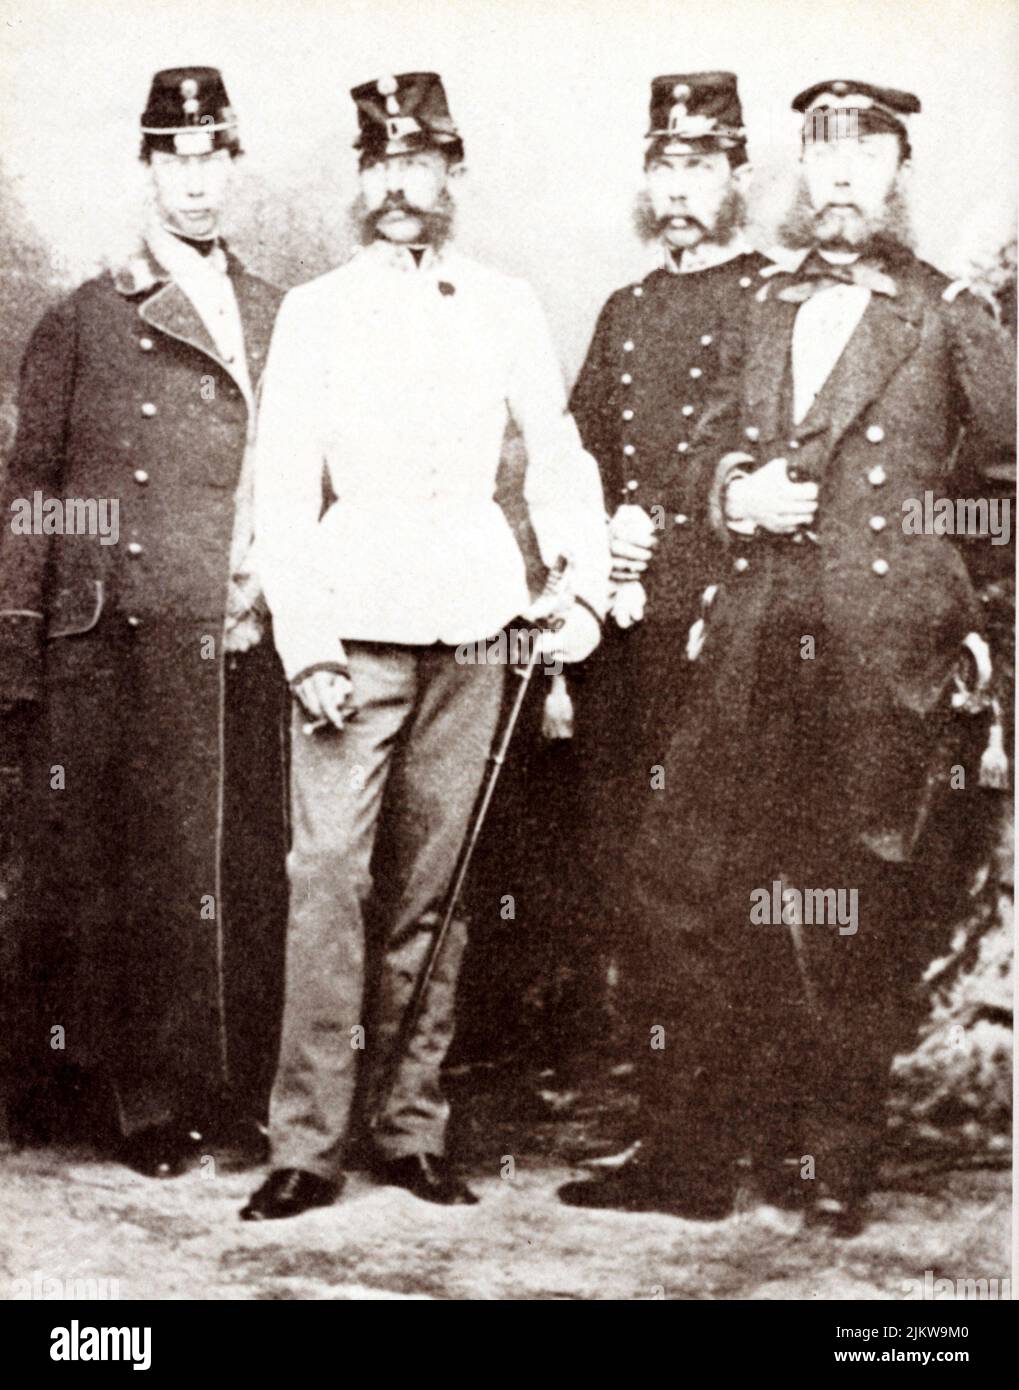 1862 , Wien , Austria : Los cuatro hermanos HABSBURGO : en el centro el célebre Kaiser austriaco FRANZ JOSEF ( 1830 - 1916 ) , emperador de Austria , rey de Hungría y Bohemia (de izquierda a derecha ) : el joven LUDWIG VIKTOR ( 1842 - 1919 ) , KARL LUDWIG ( 1833 - 1896 , padre del príncipe francisco Fernando muerto en Sarajevo 1914 ) y Fernando MAXIMILIANO (futuro 1864 Emperador de México , 1832 - 1867 ) - FRANCESCO GIUSEPPE - JOSÉ - ABSBURG - ASBURGO - NOBILI - NOBILTA' - REALI - ABSBURGO - HASBURG - REYES - FAMILIA - FAMILIA - FRATELLI --- ARCHIVIO GBB Foto de stock